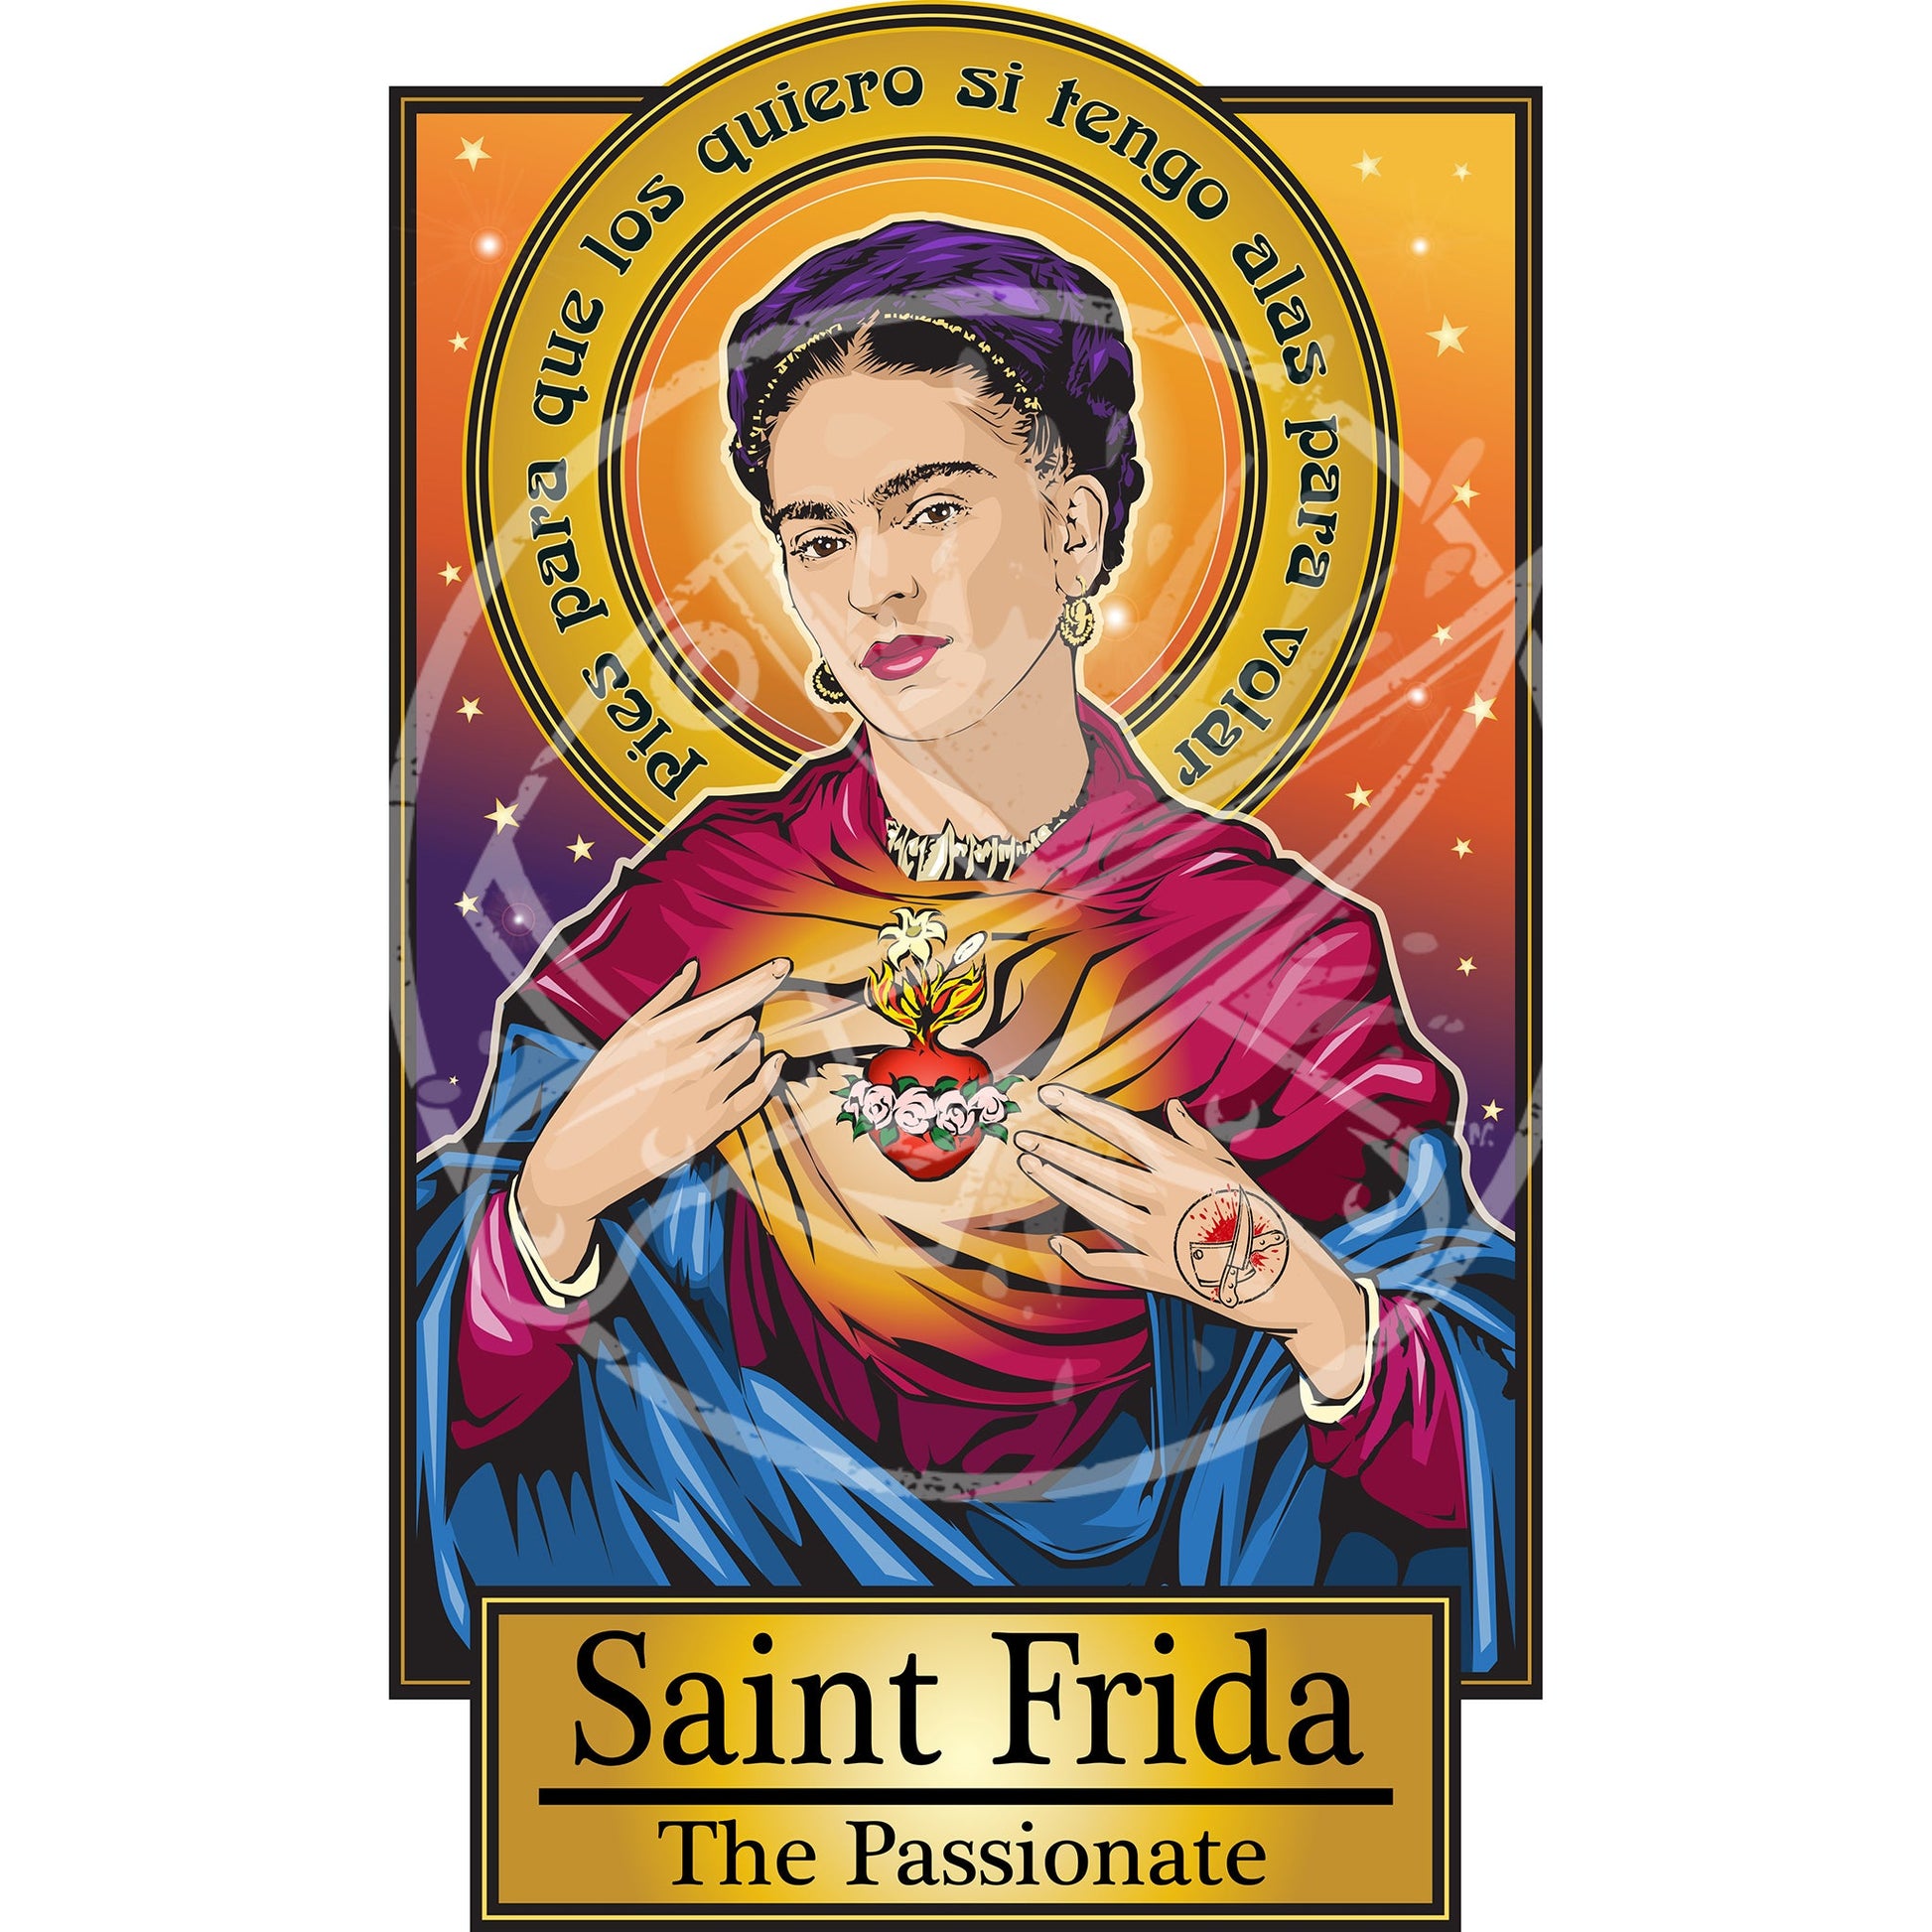 Saint Frida The Passionate Poster Cleaverandblade.com